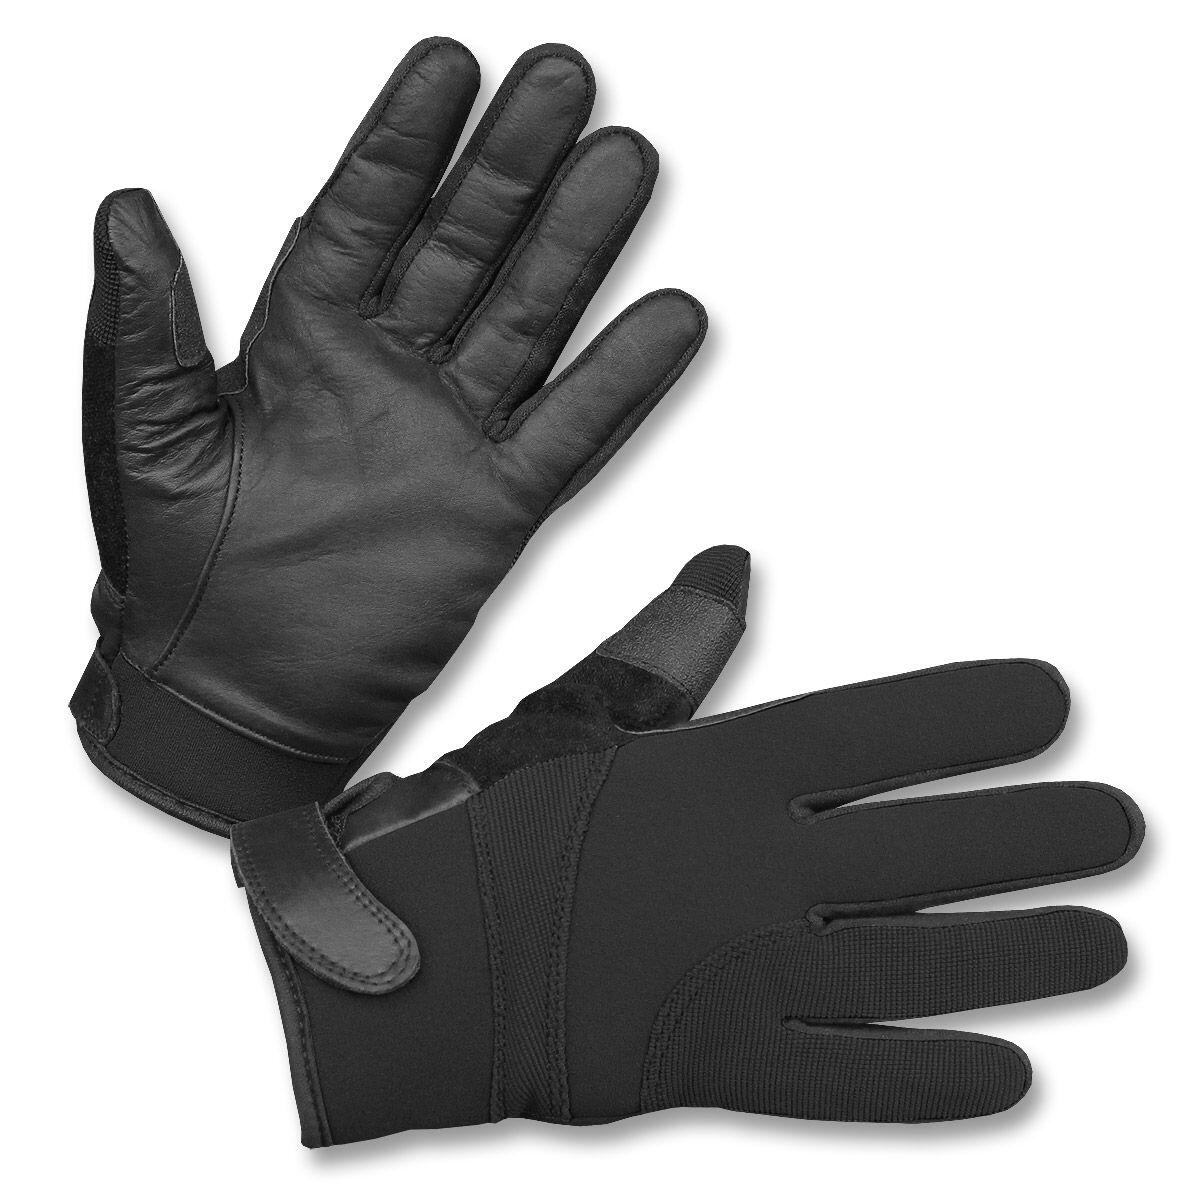 Køb Snitsikre handsker - Neopren / Læder - Tilbud: - & SECURITY Handsker,-